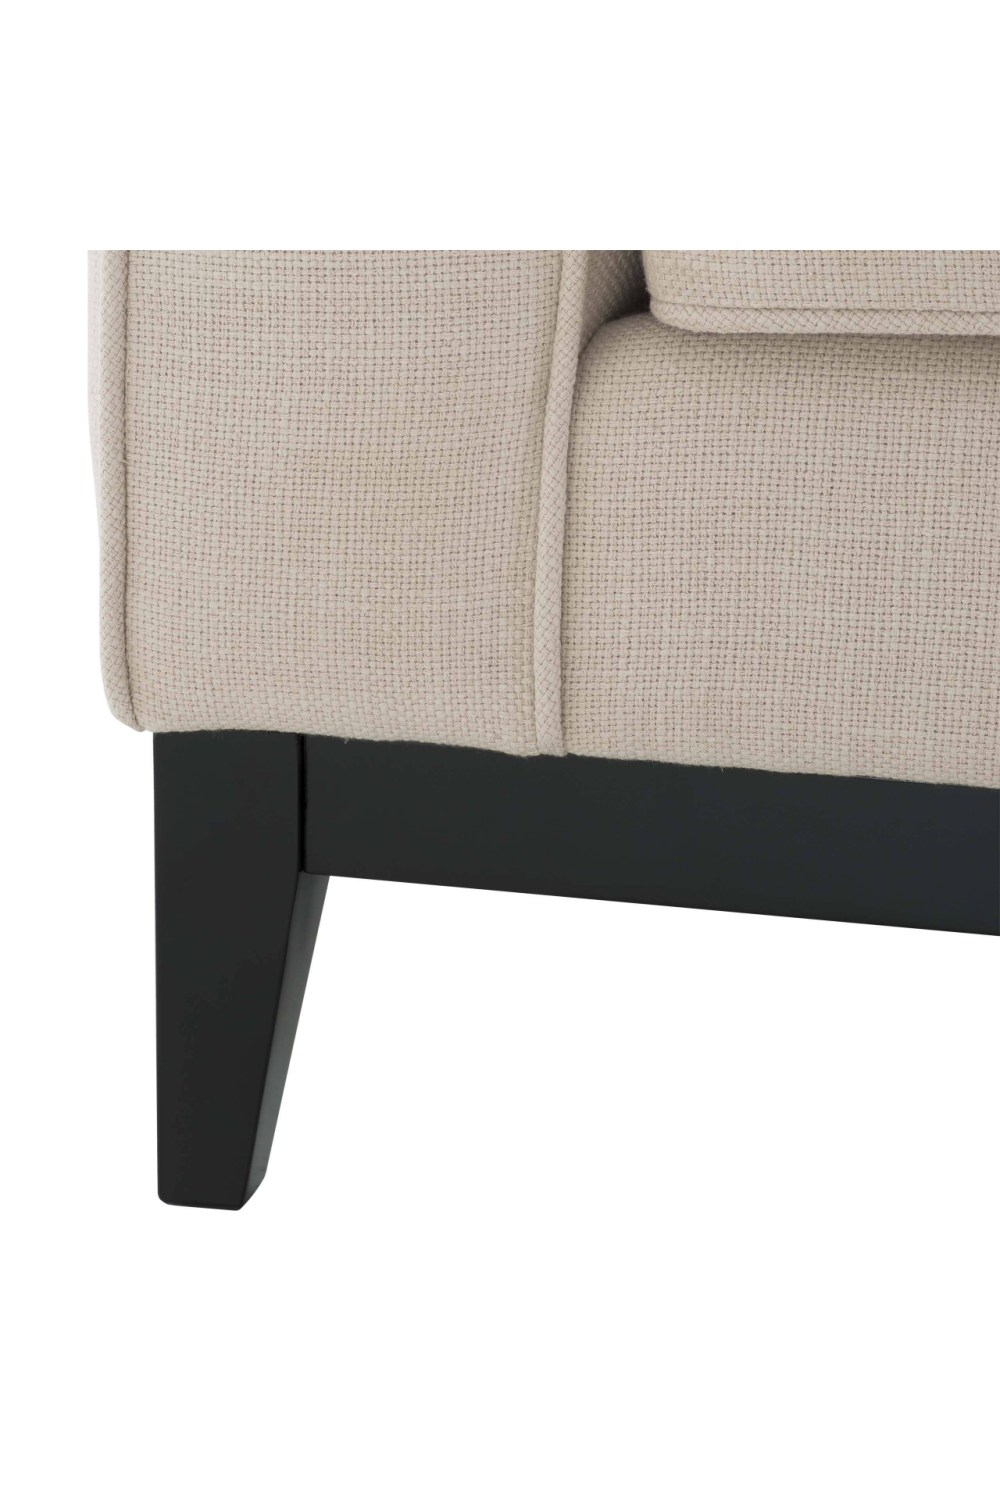 Beige Living Room Chair | Eichholtz Principe | Oroa.com